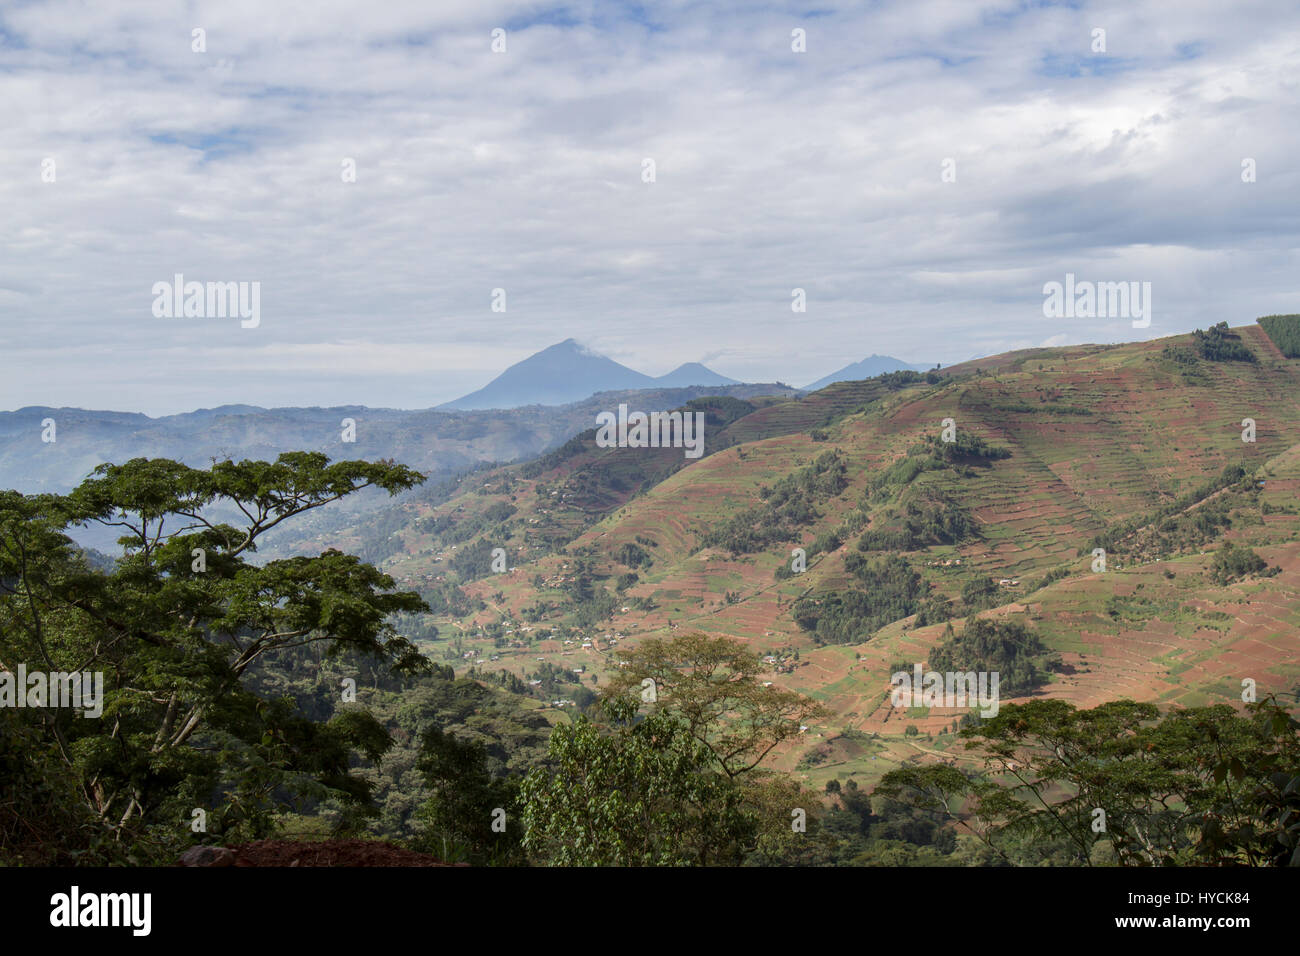 Volcanoes-Nationalpark über Tee Terrassen und Landwirtschaft Grundstücke am Hang von Ruanda, Afrika. Stockfoto